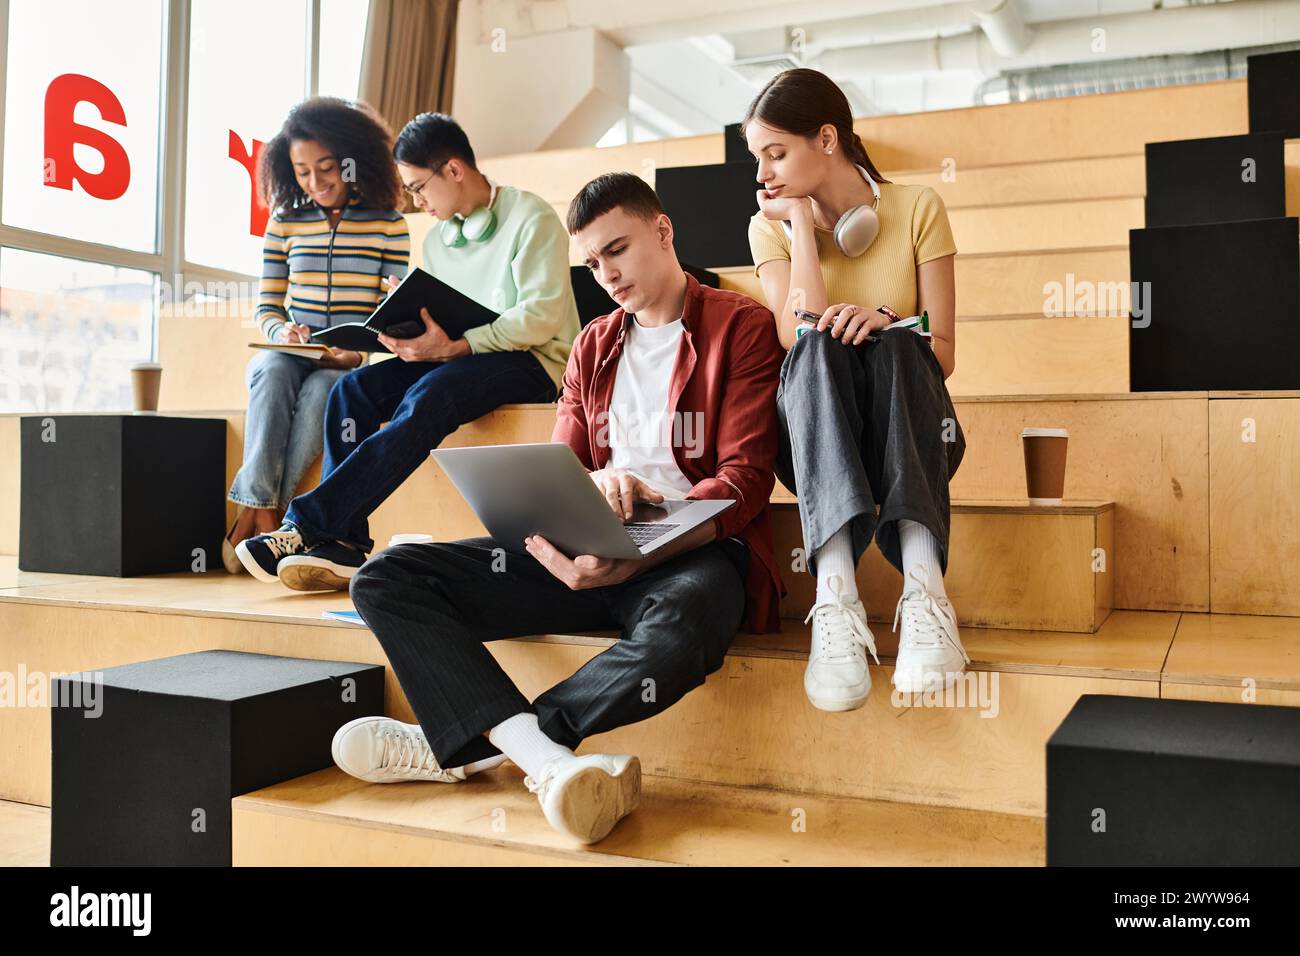 Eine multikulturelle Gruppe von Schülern sitzt auf Stufen und arbeitet in einer Bildungsumgebung zusammen an einem Laptop. Stockfoto